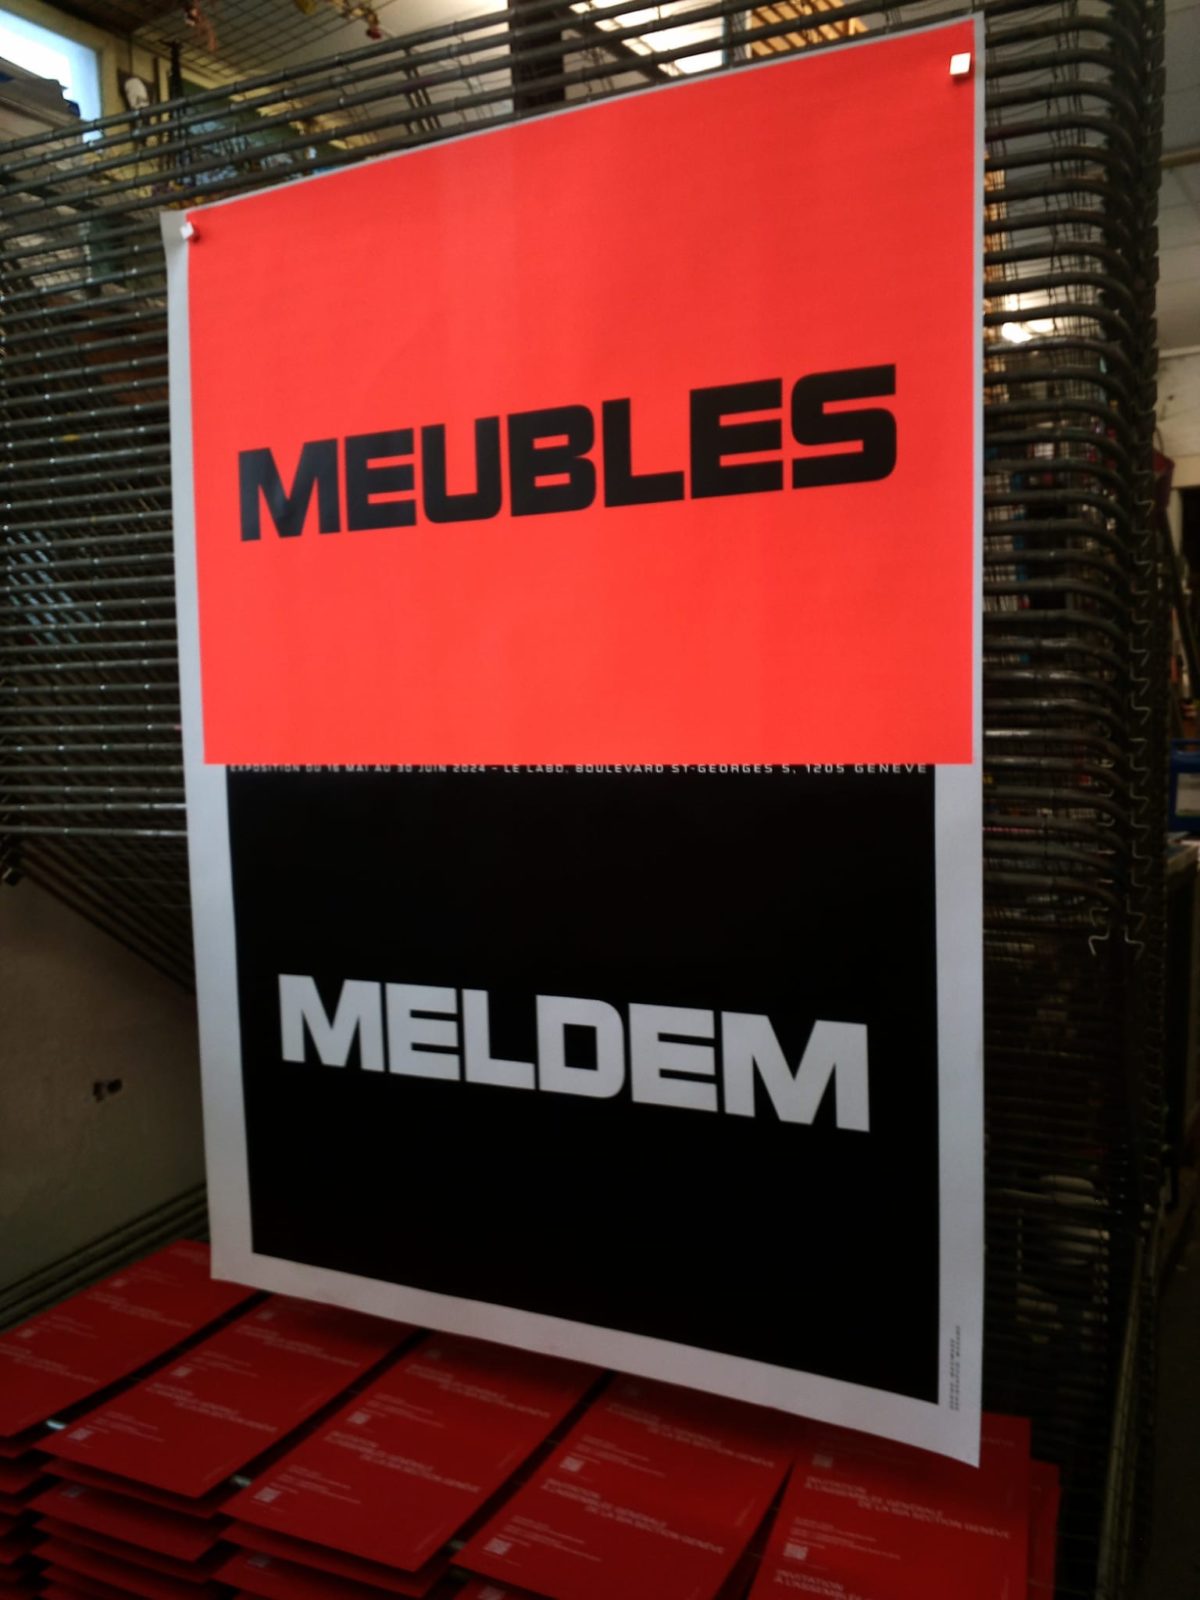 Prochaine exposition : MEUBLES MELDEM vernissage le 16 mai